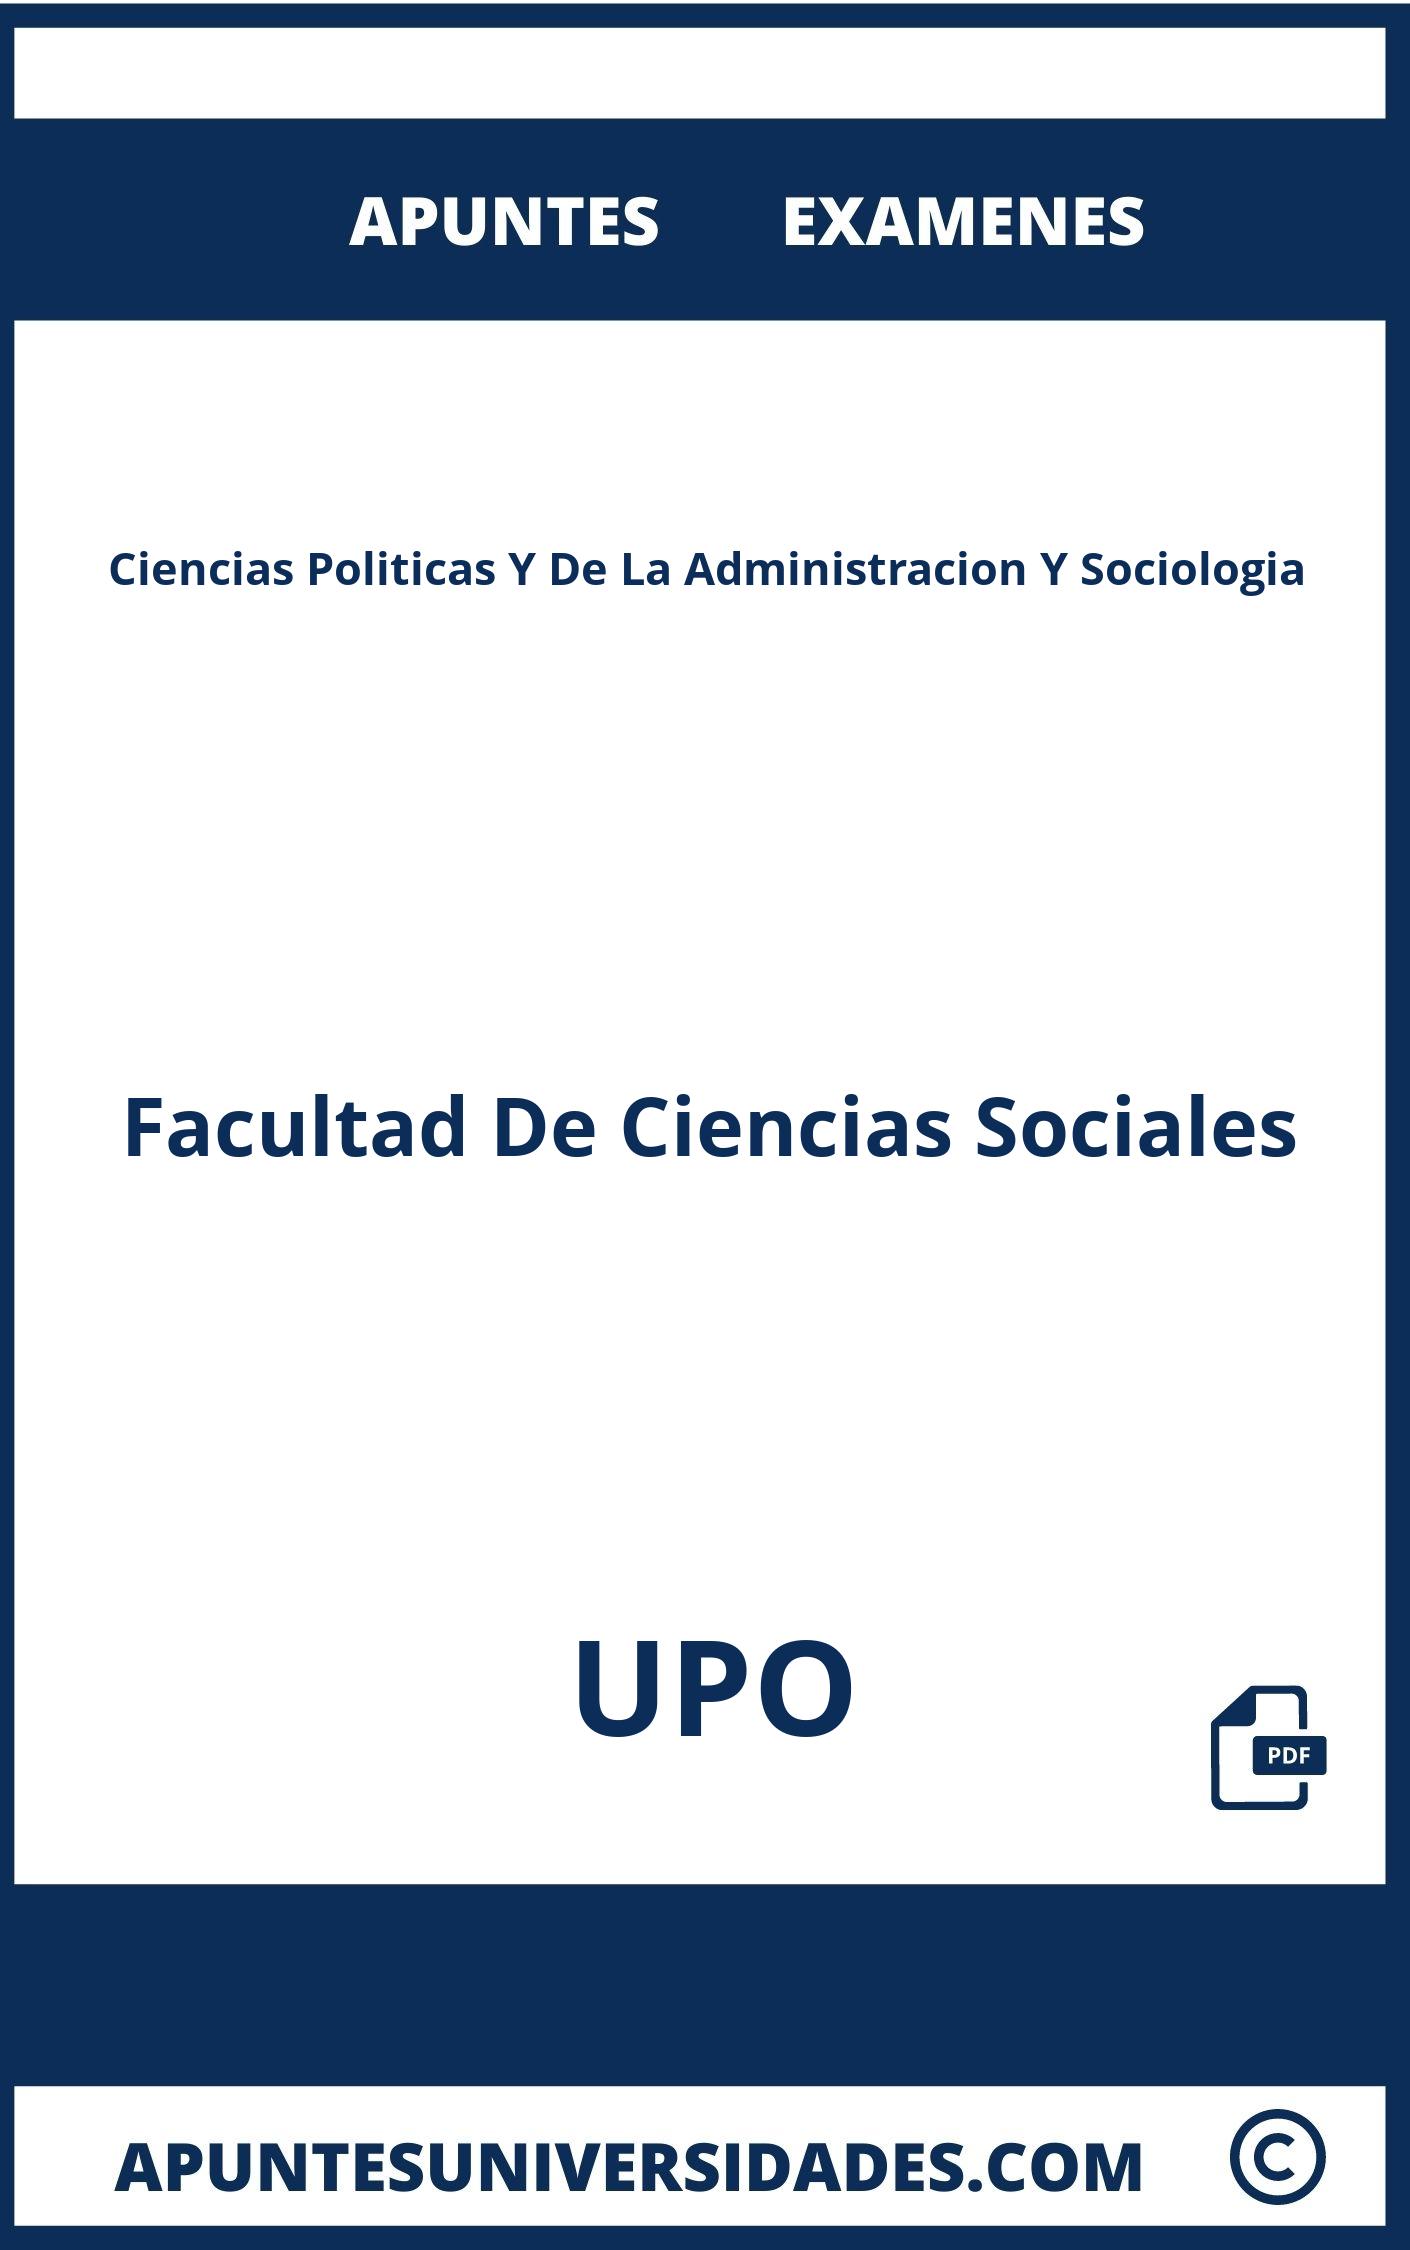 Examenes Apuntes Ciencias Politicas Y De La Administracion Y Sociologia UPO